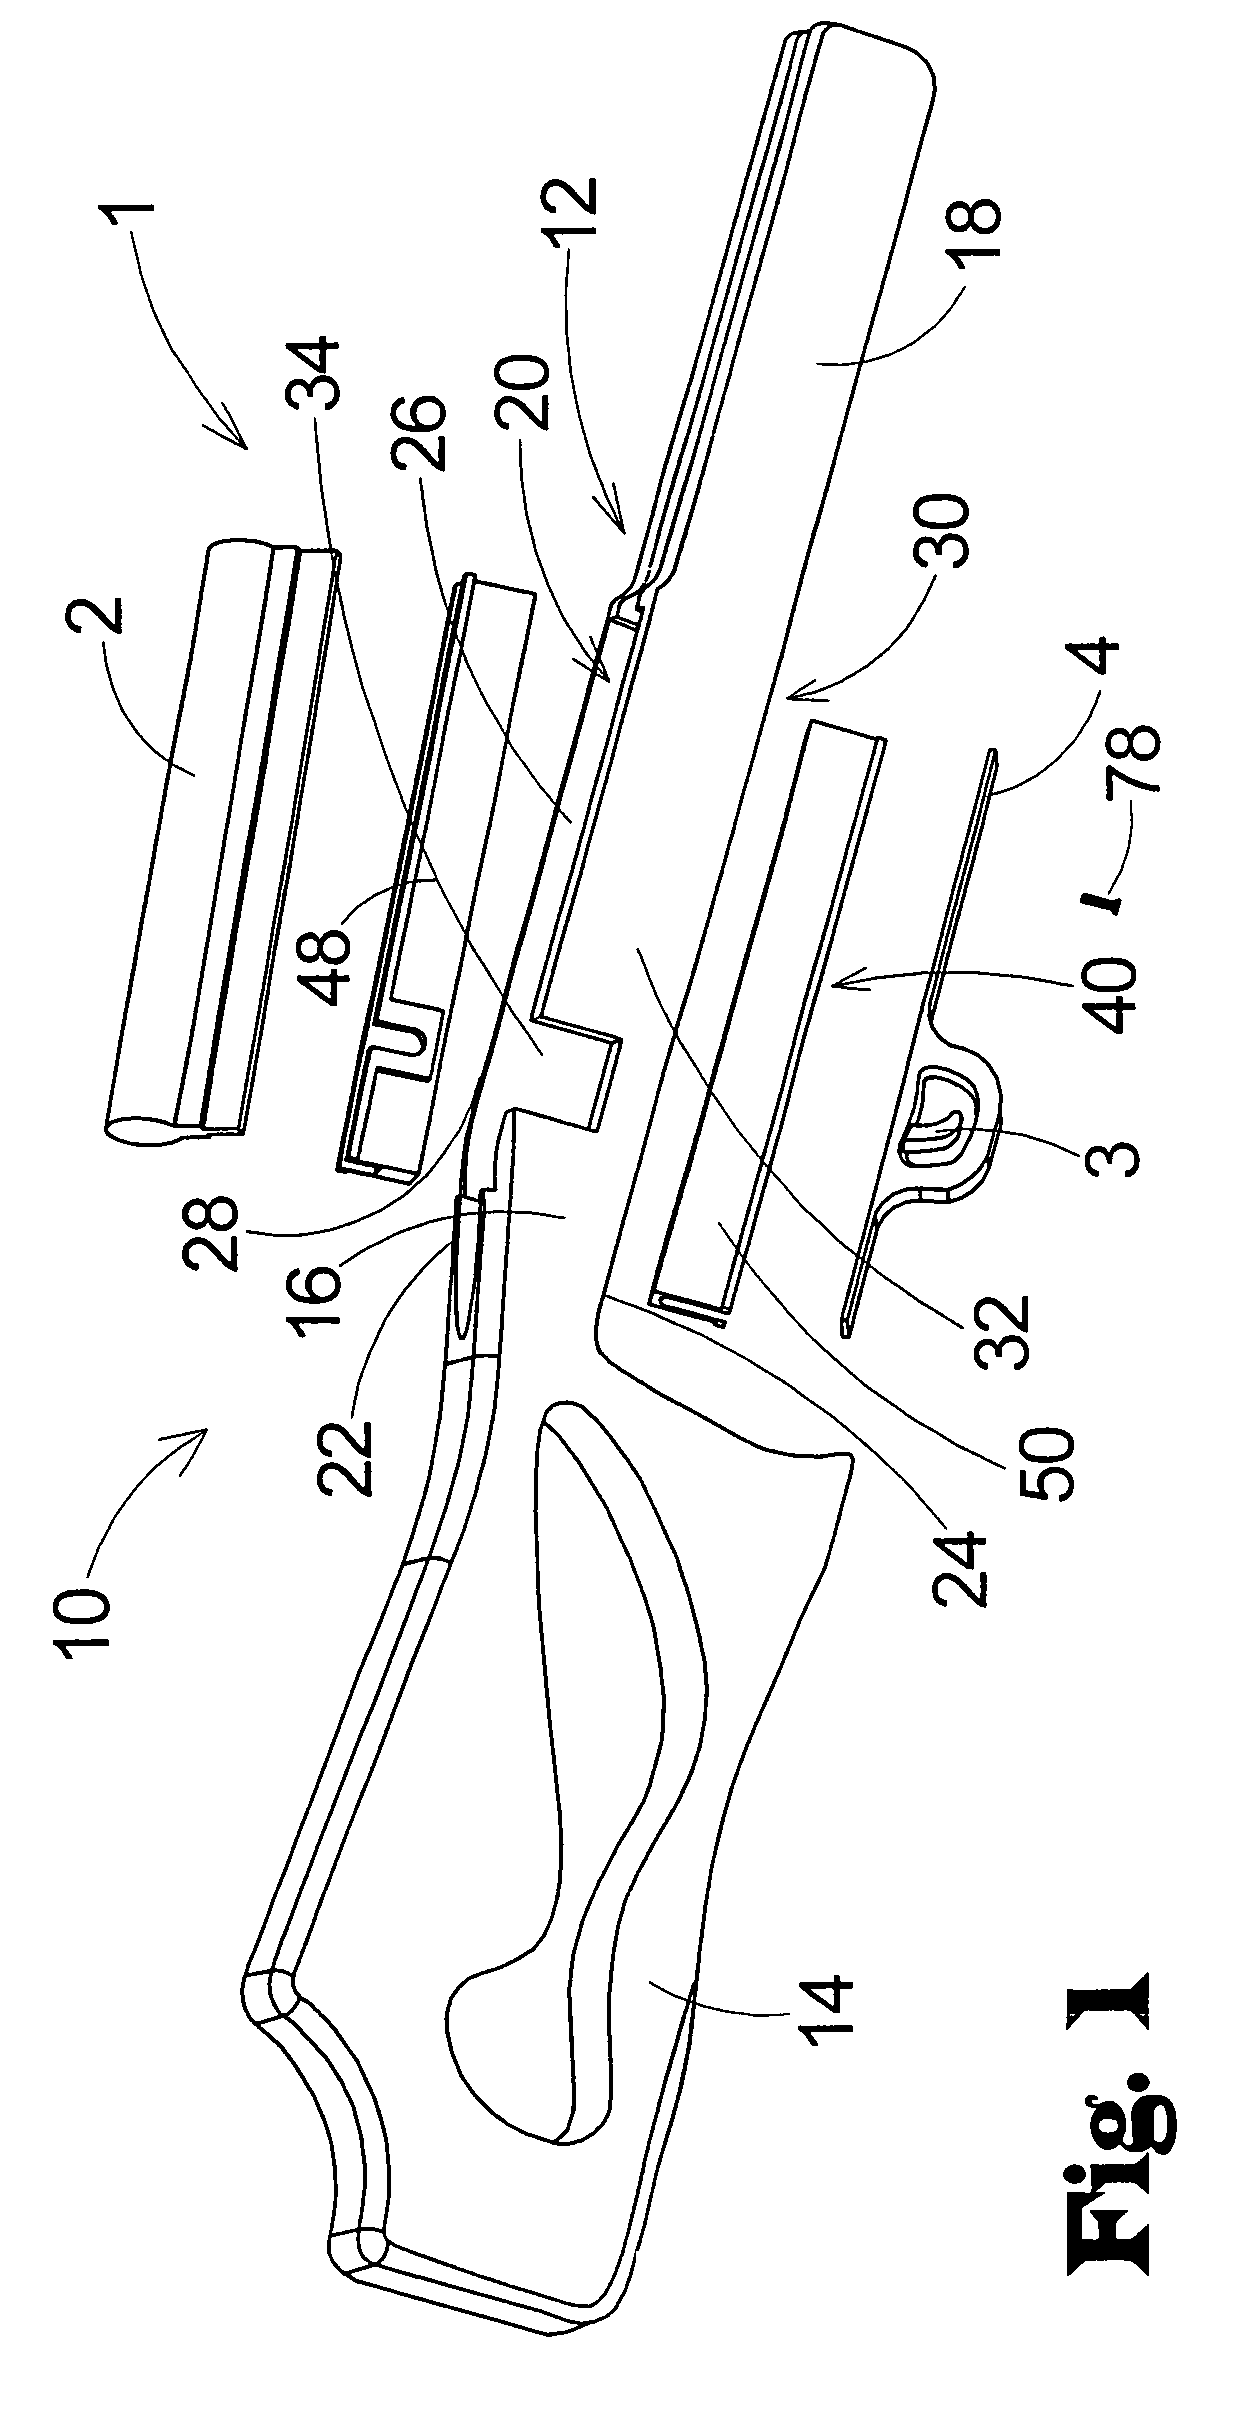 Gunstock with modular insert